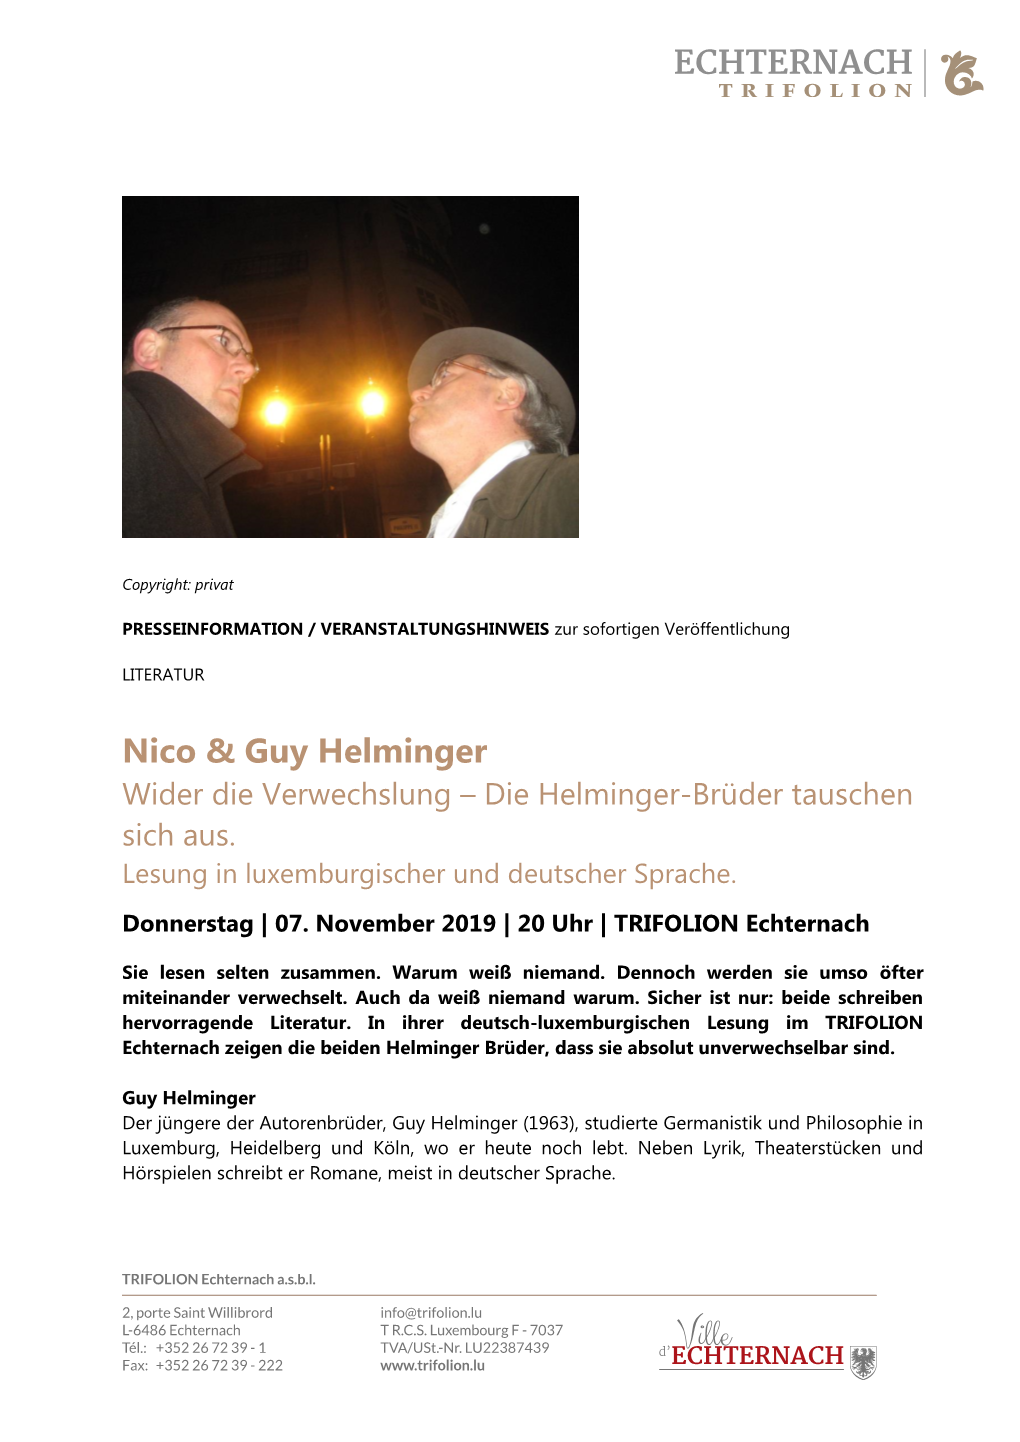 Nico & Guy Helminger